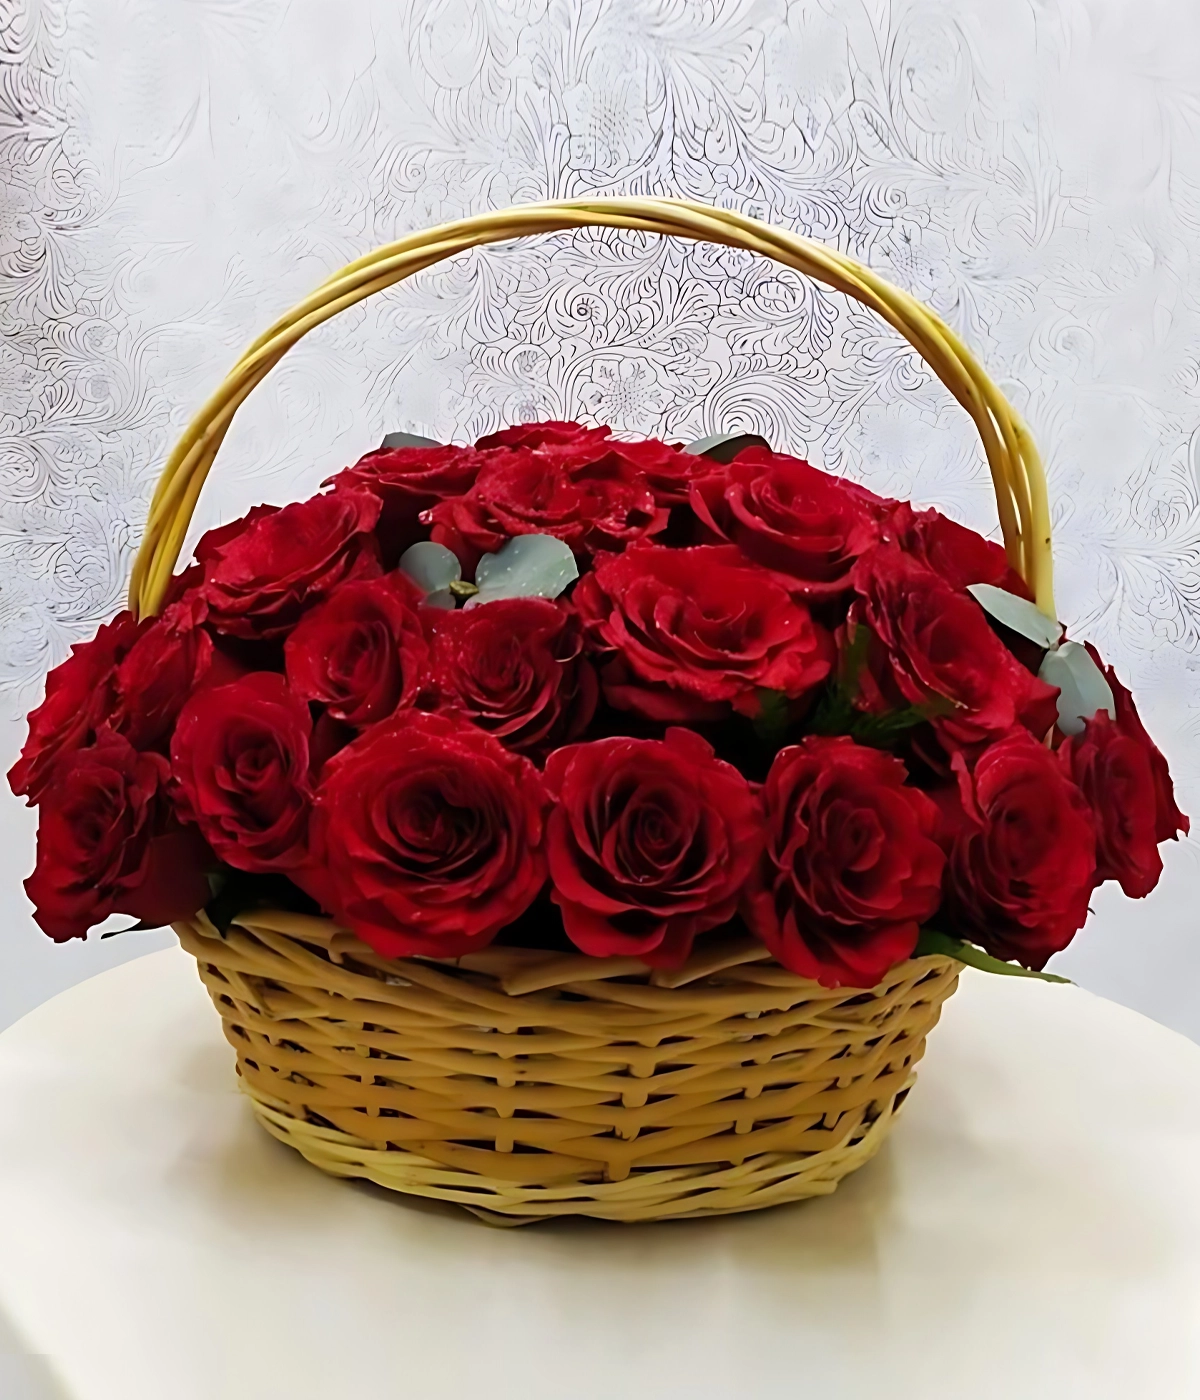 Basket of Love Flower Bouquet